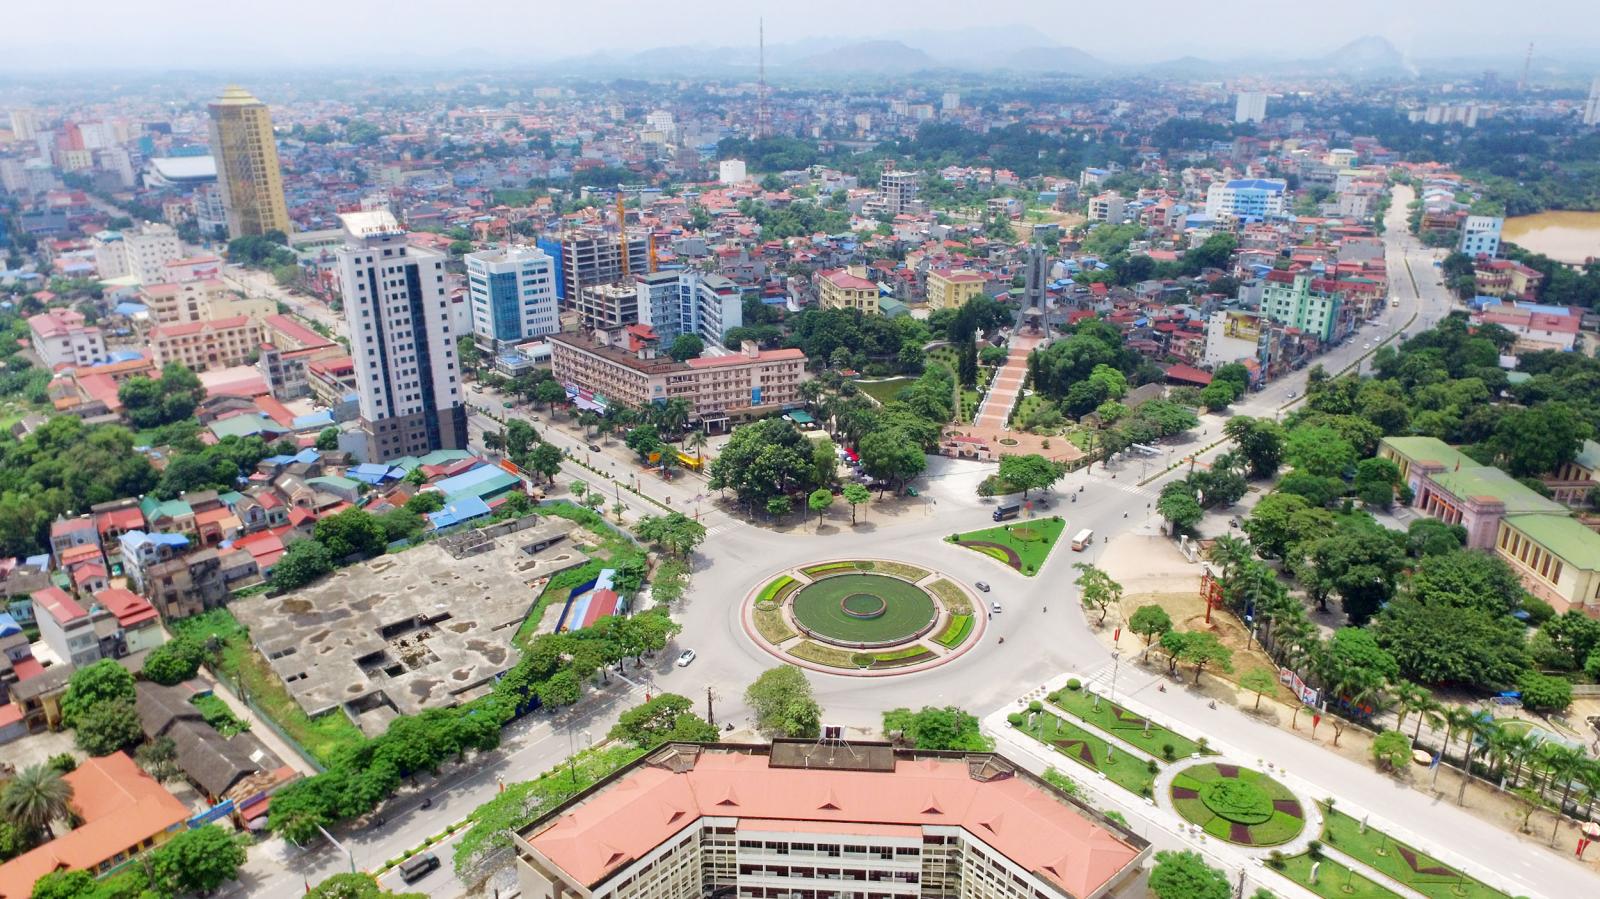 Duyệt dự án khu đô thị xanh hơn 11 ha ở Phổ Yên (Thái Nguyên)